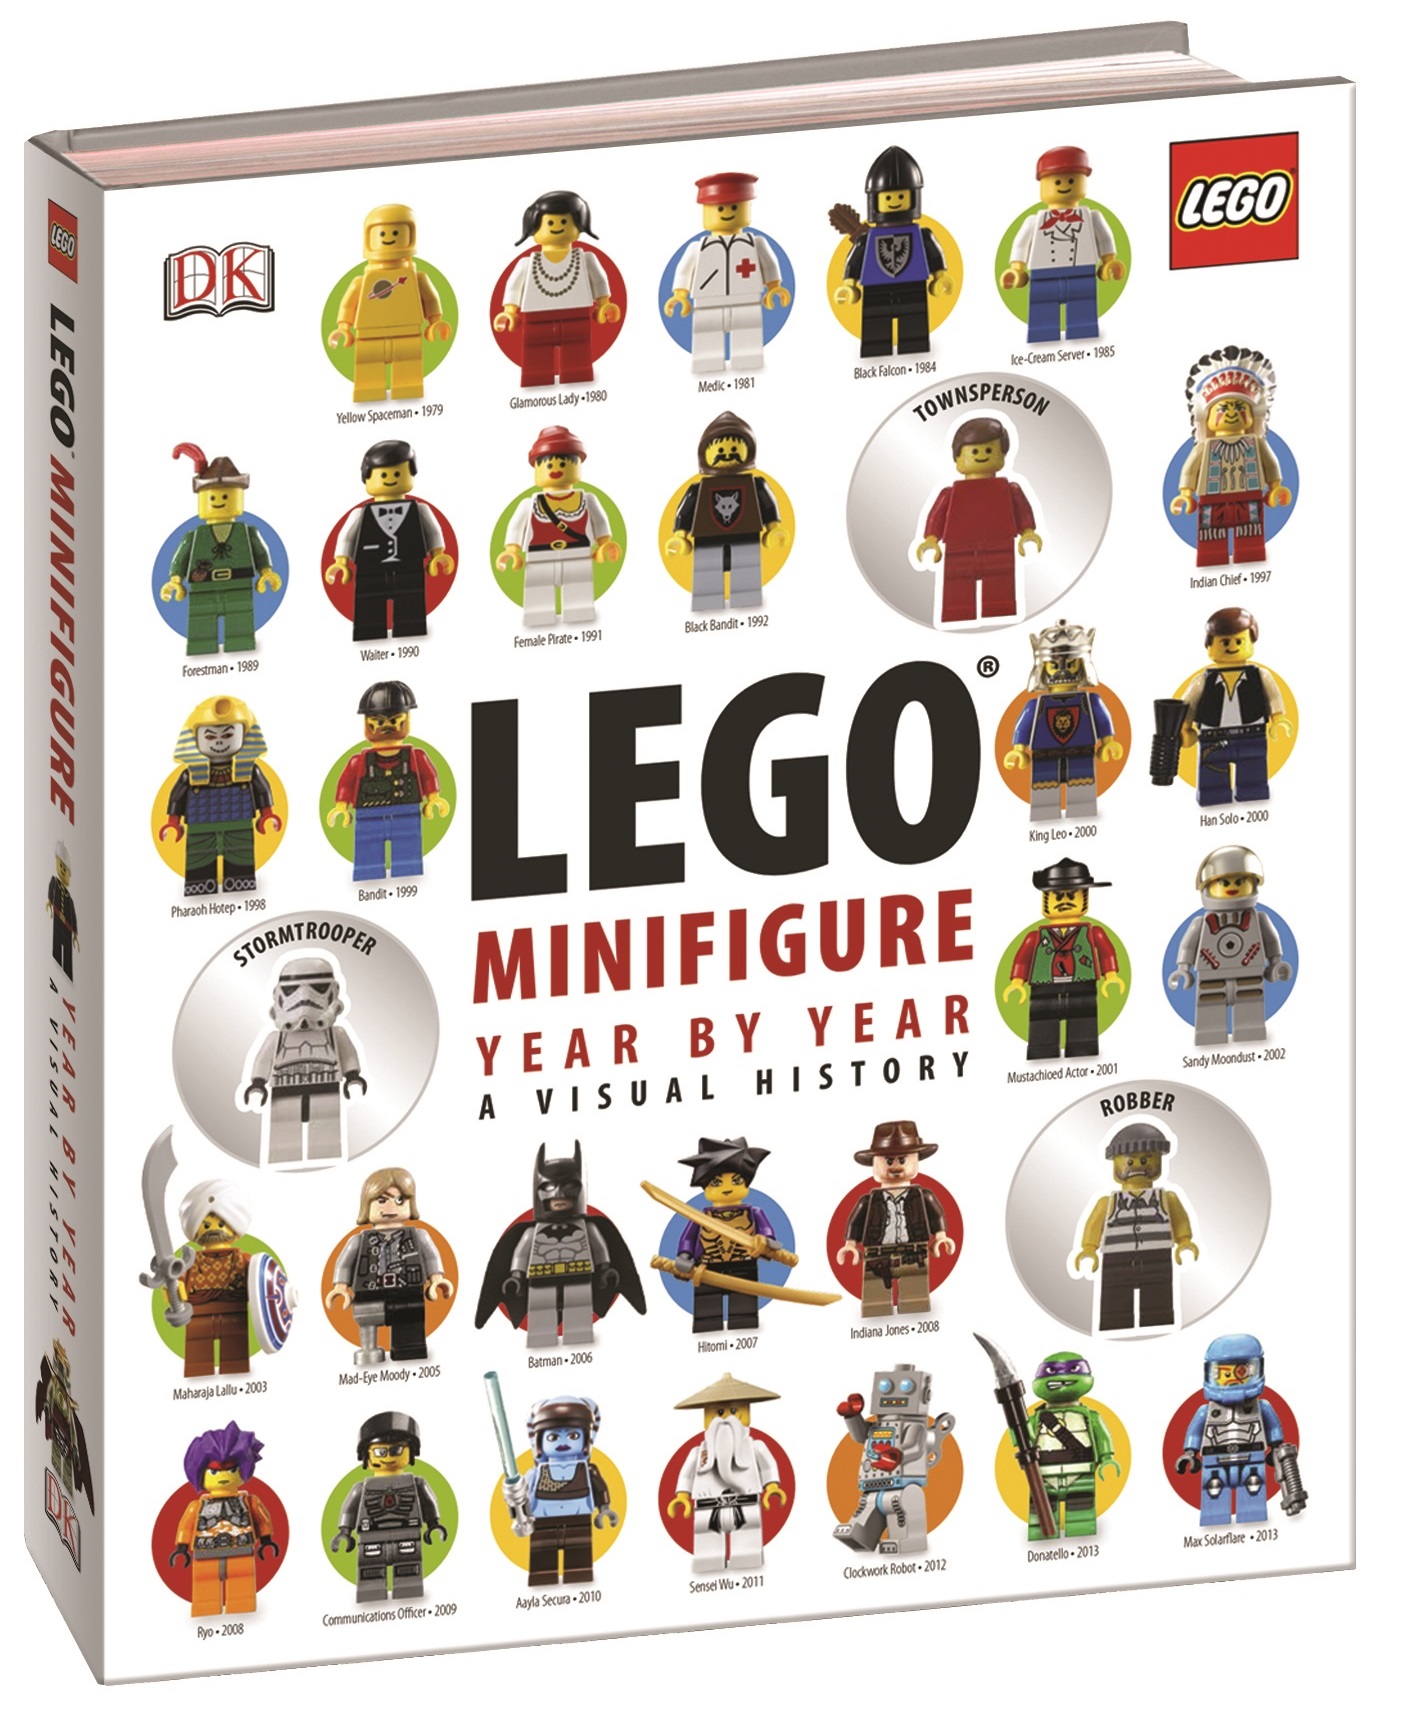 Toys N Bricks | LEGO News Site | Sales, Deals, Reviews, MOCs, Blog, New